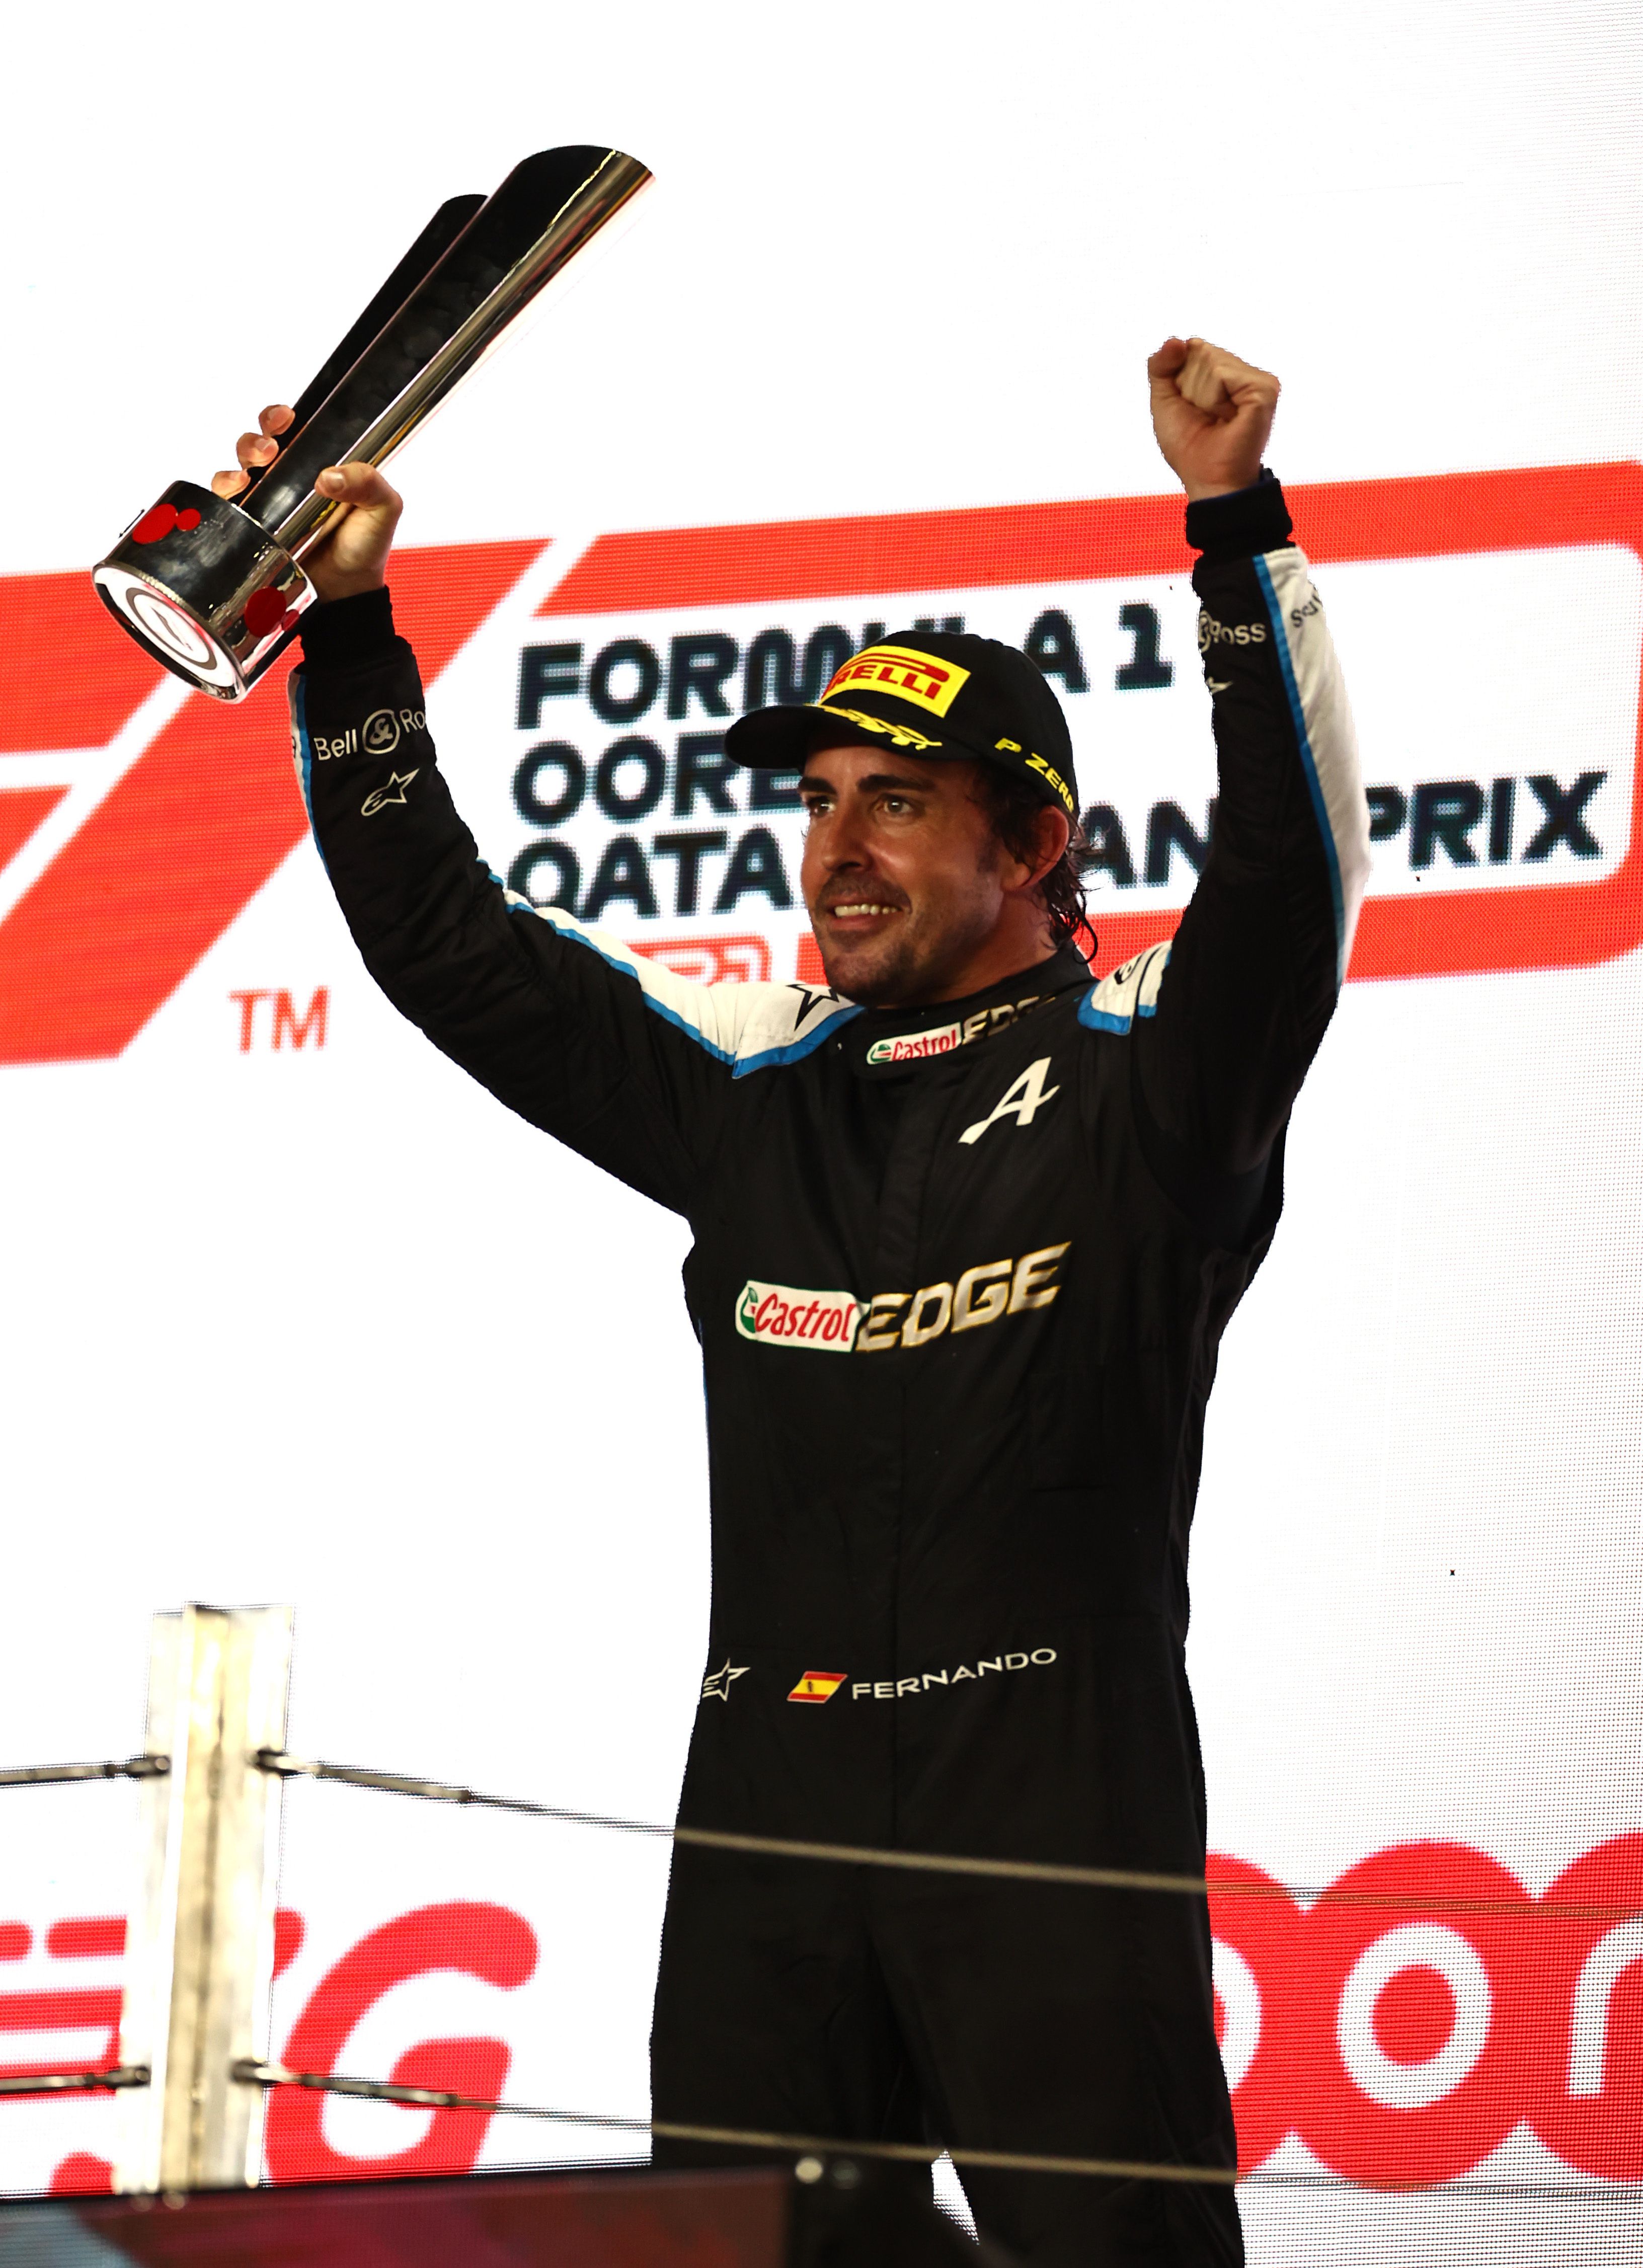 A 40 esztendős Fernando Alonso 2018 végén elköszönt az F1-től, idén tért vissza, s a Katari Nagydíjon harmadikként végzett/Fotó: Gettyimages